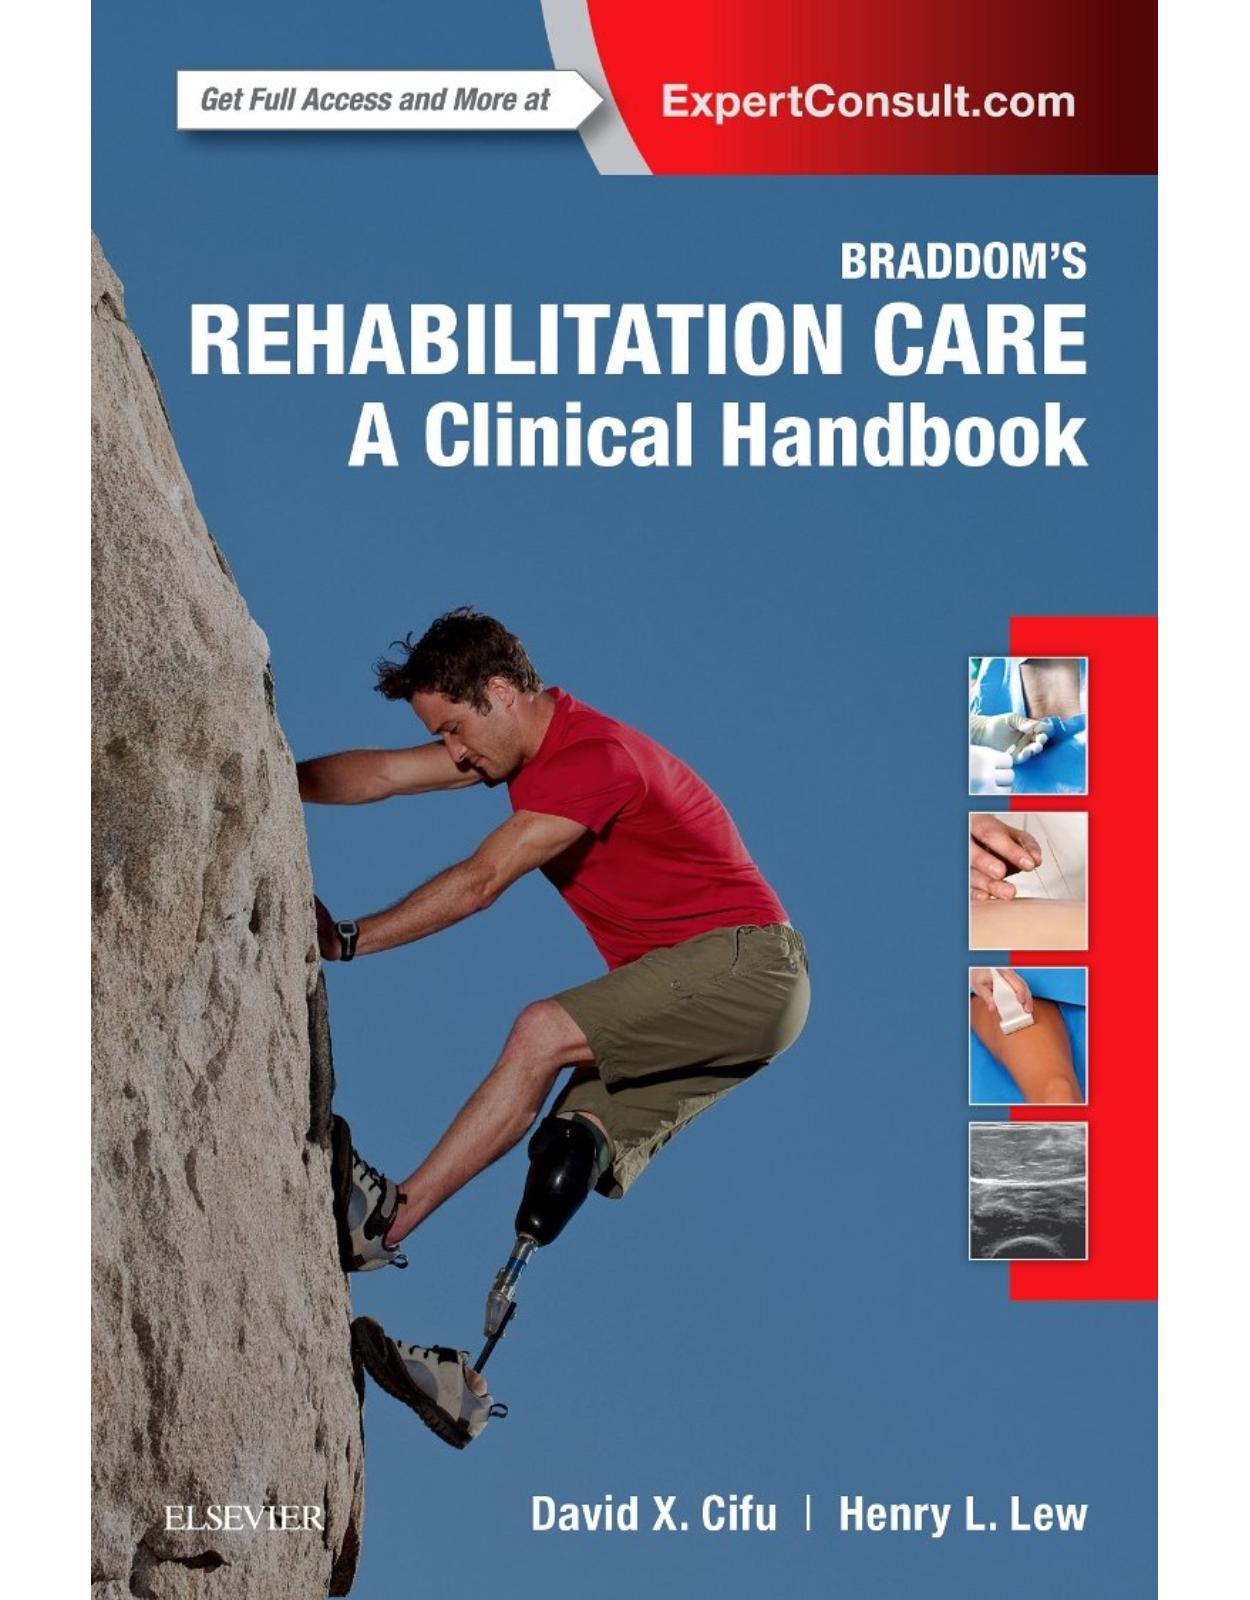 Braddom’s Rehabilitation Care: A Clinical Handbook